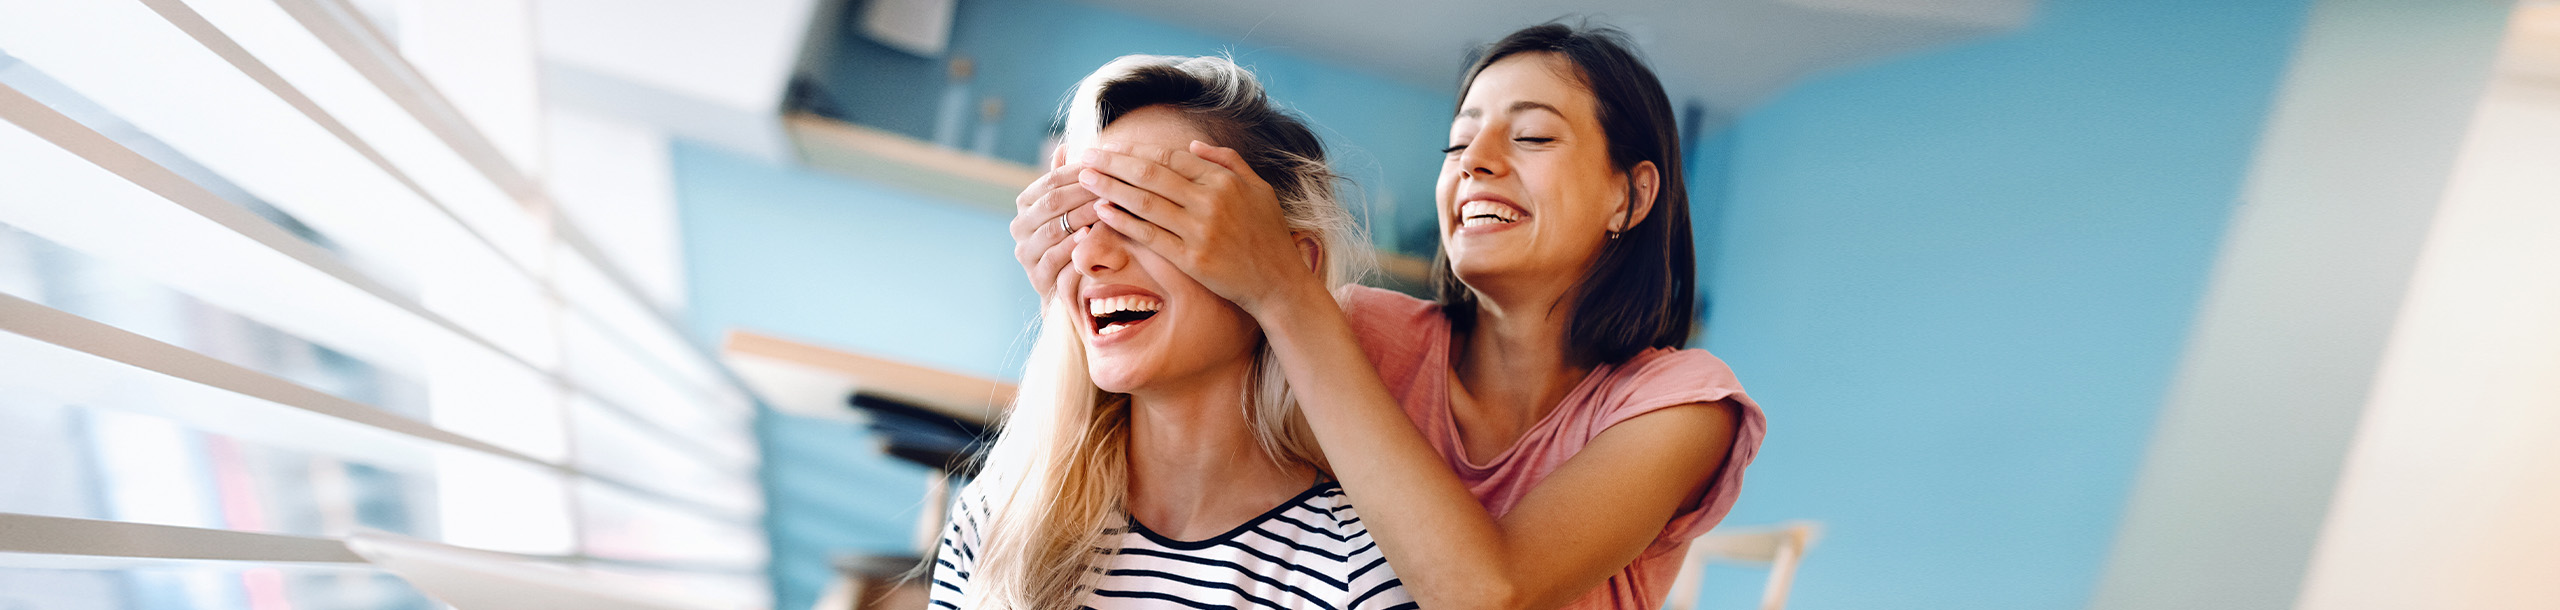 Eine Frau hält einer anderen Frau die Augen zu während sie lachend vor einem Tablet sitzen.